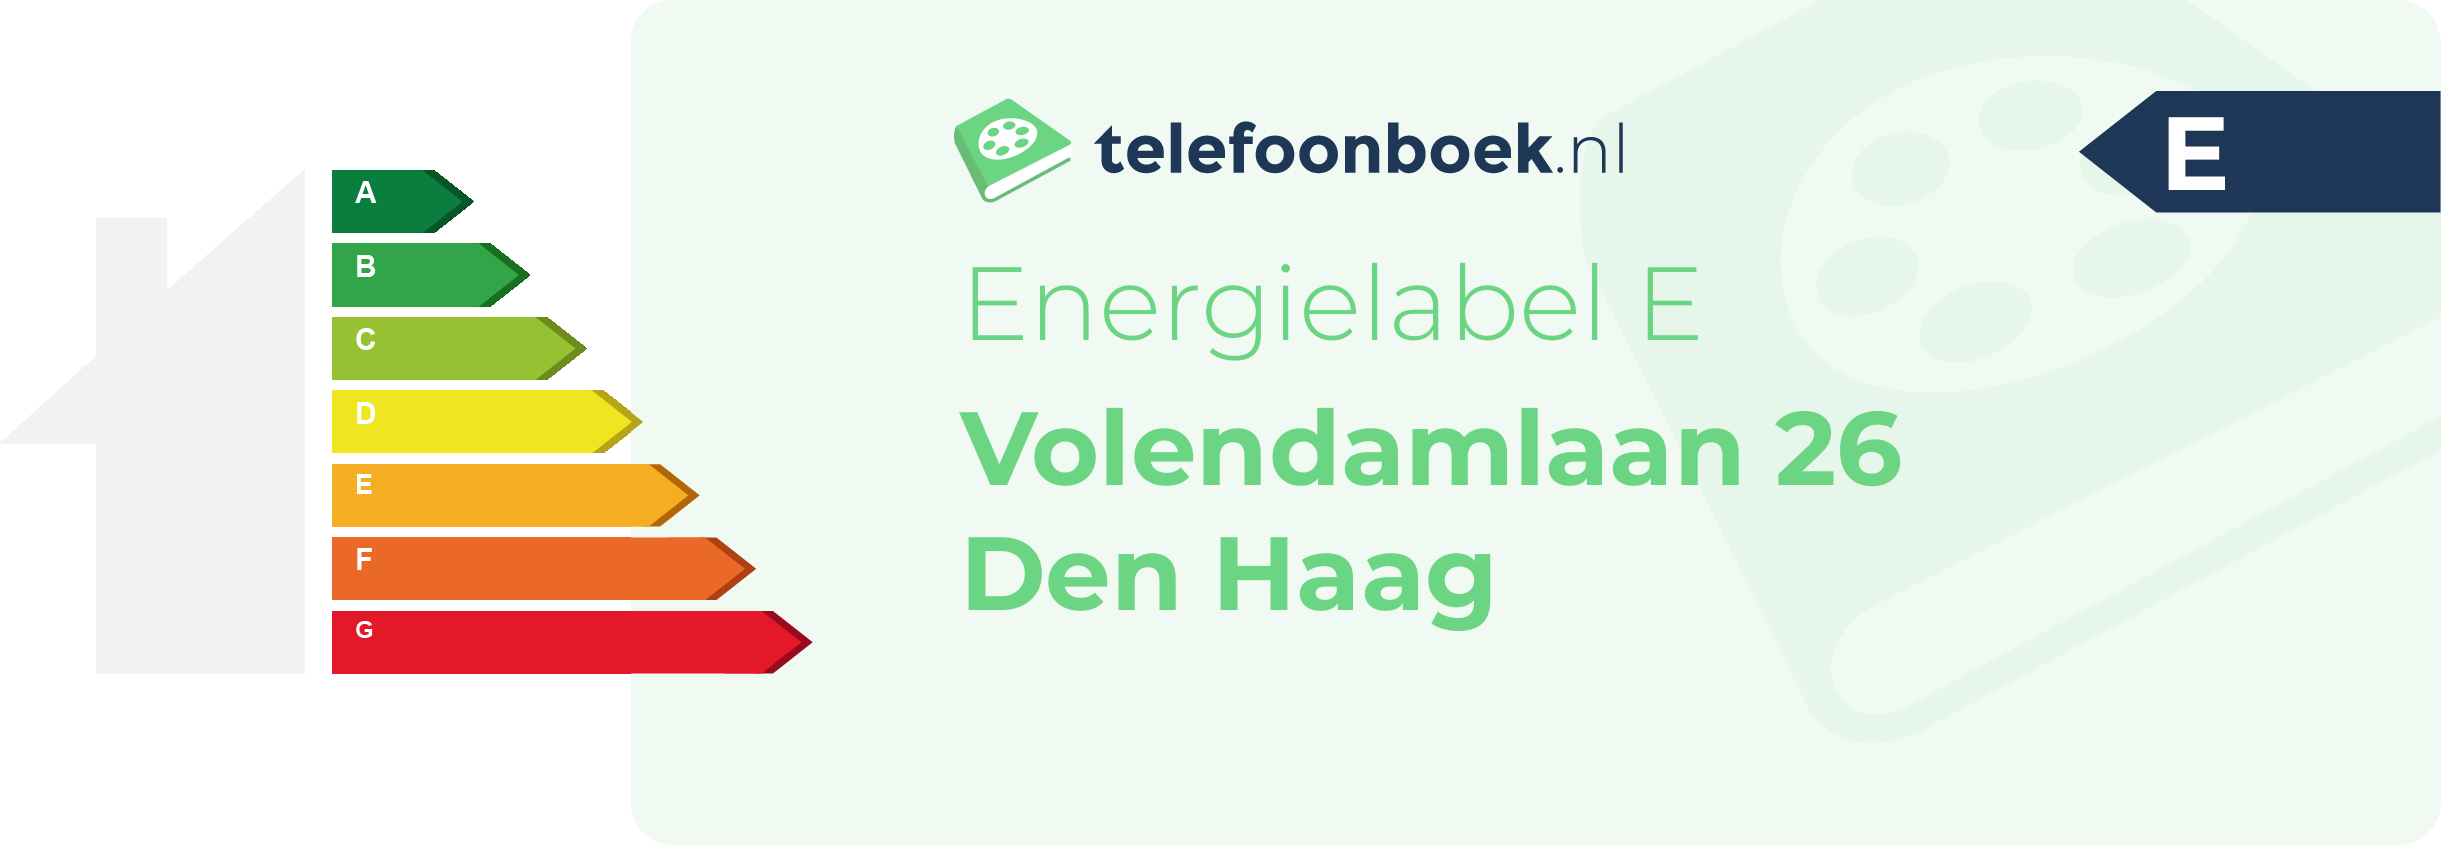 Energielabel Volendamlaan 26 Den Haag